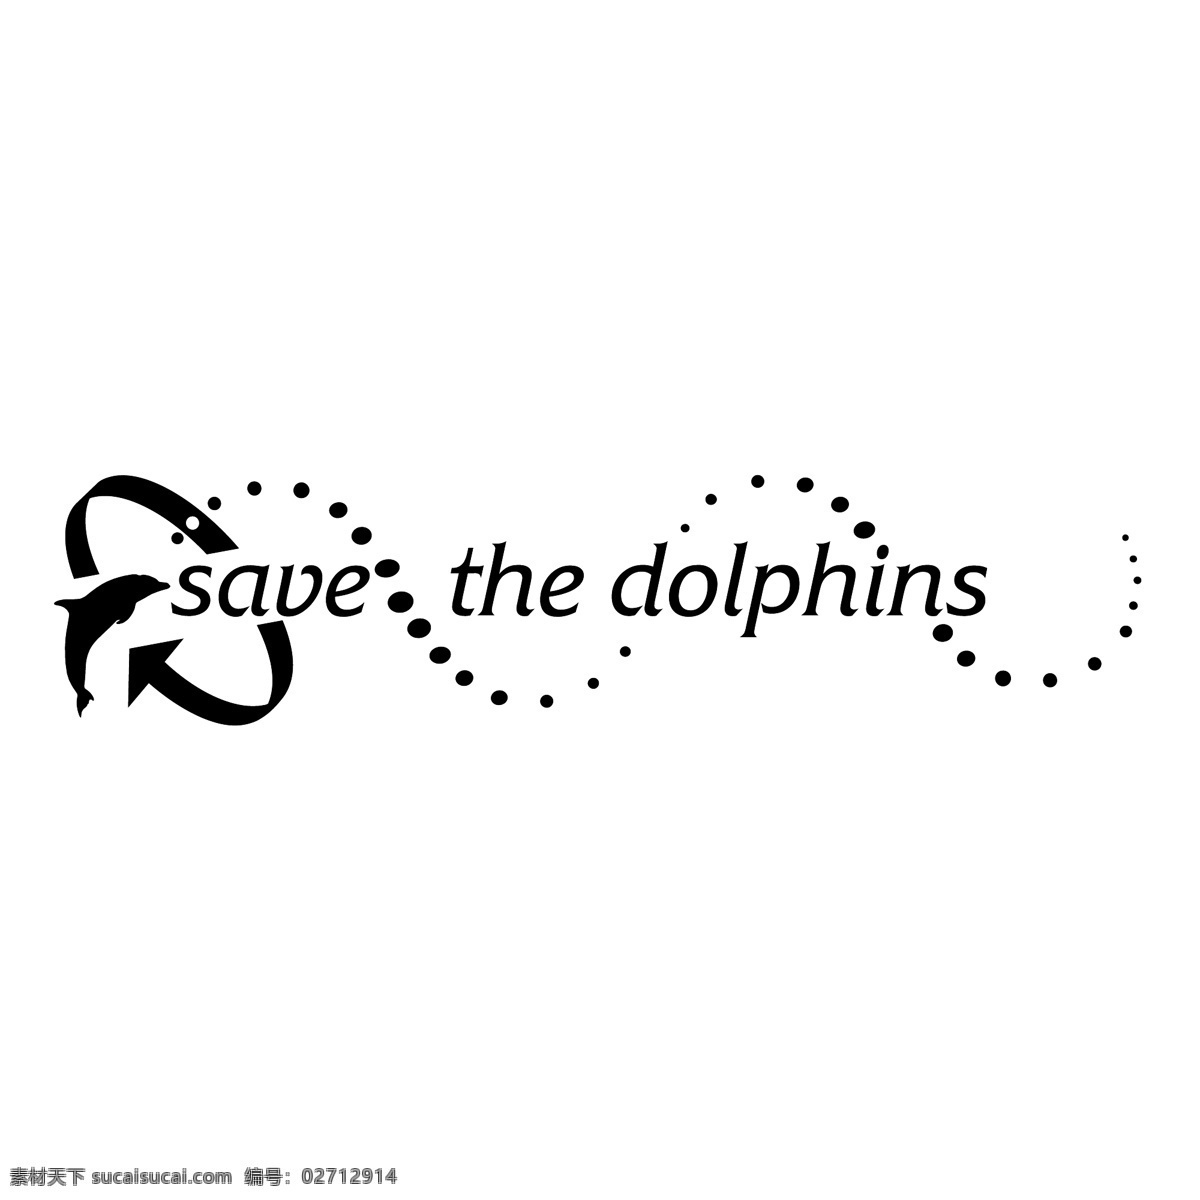 拯救 海豚 标识 公司 免费 品牌 品牌标识 商标 矢量标志下载 免费矢量标识 矢量 psd源文件 logo设计